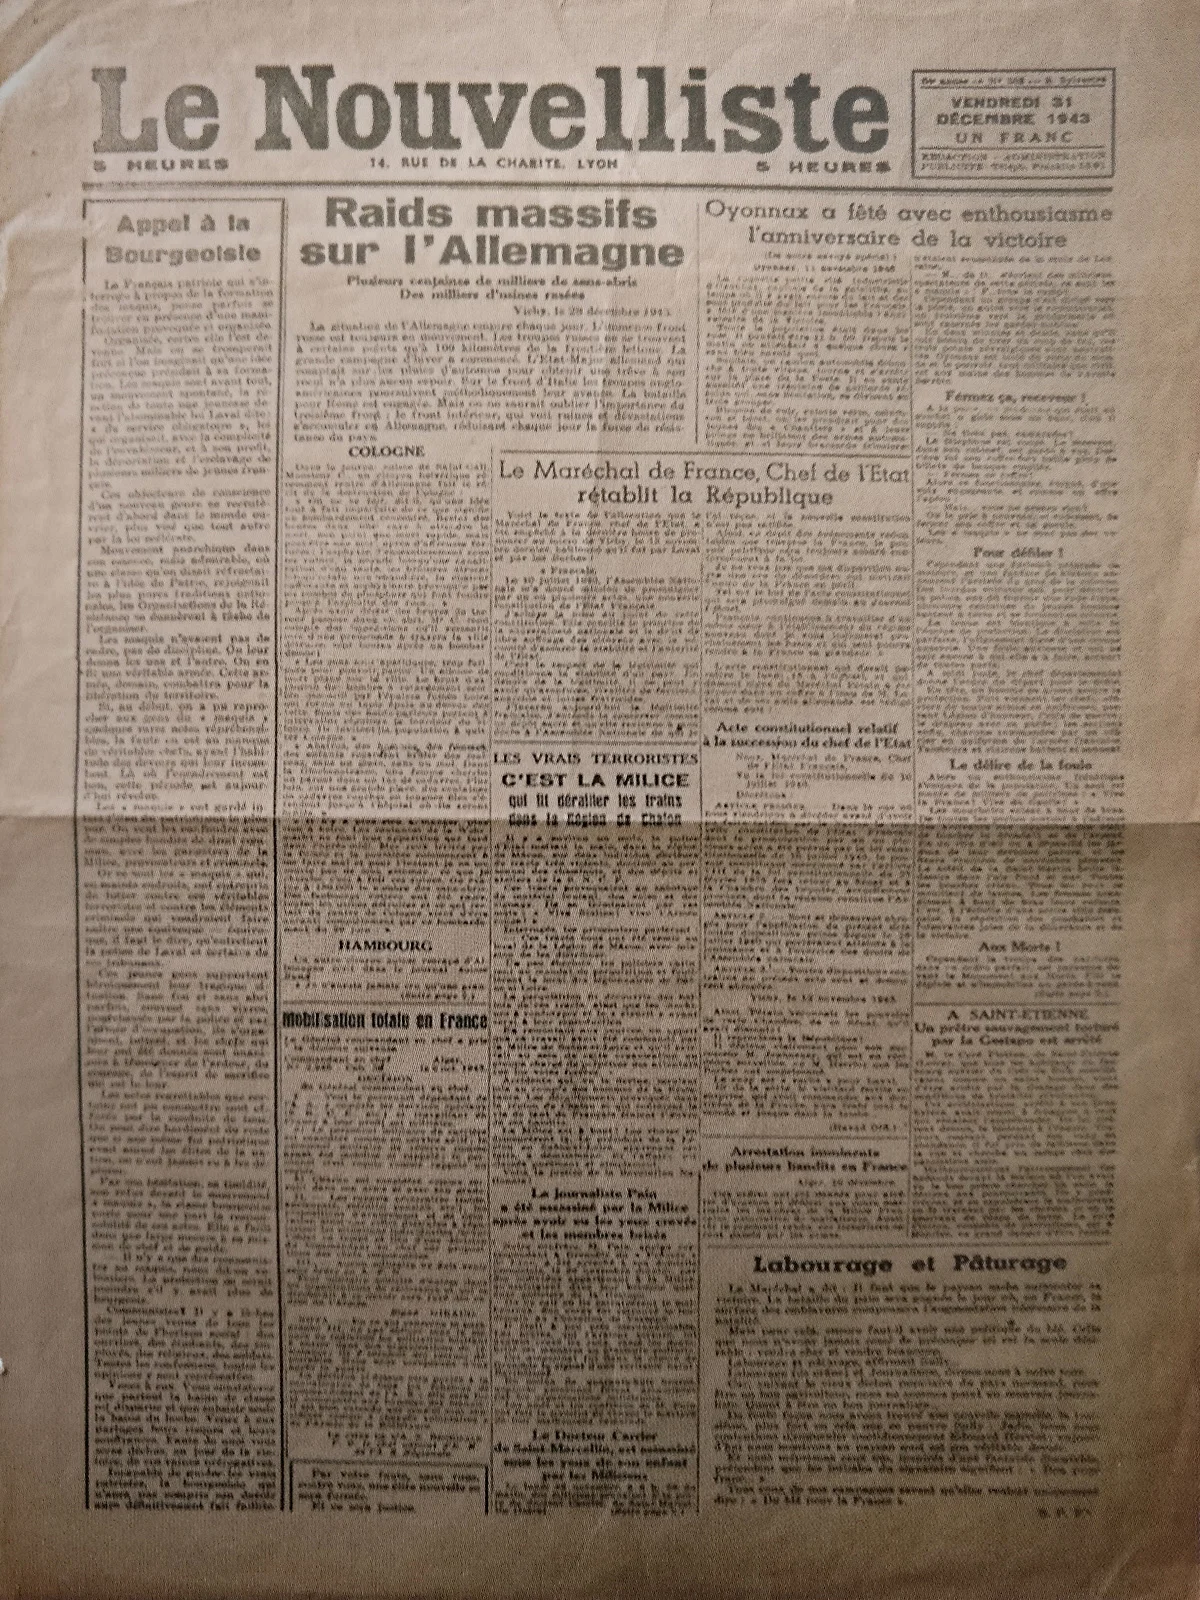 Mars 1944. Fausse édition du Nouvelliste (journal collaborationniste) du 31 décembre 1943, réalisée par la Résistance.